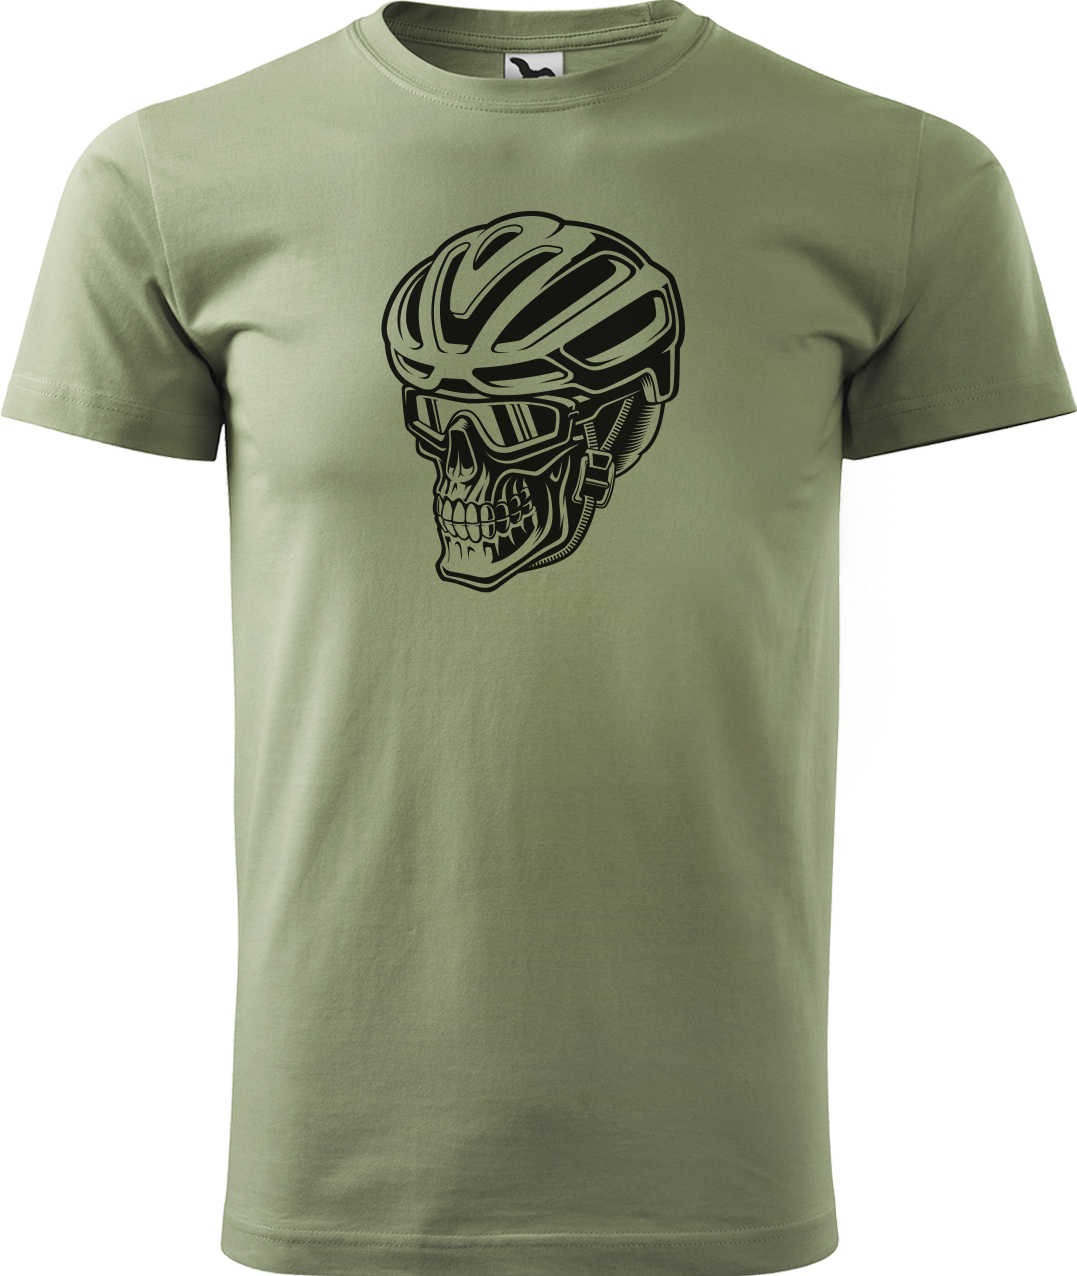 Pánské tričko pro cyklistu - Lebka v helmě Velikost: M, Barva: Světlá khaki (28)